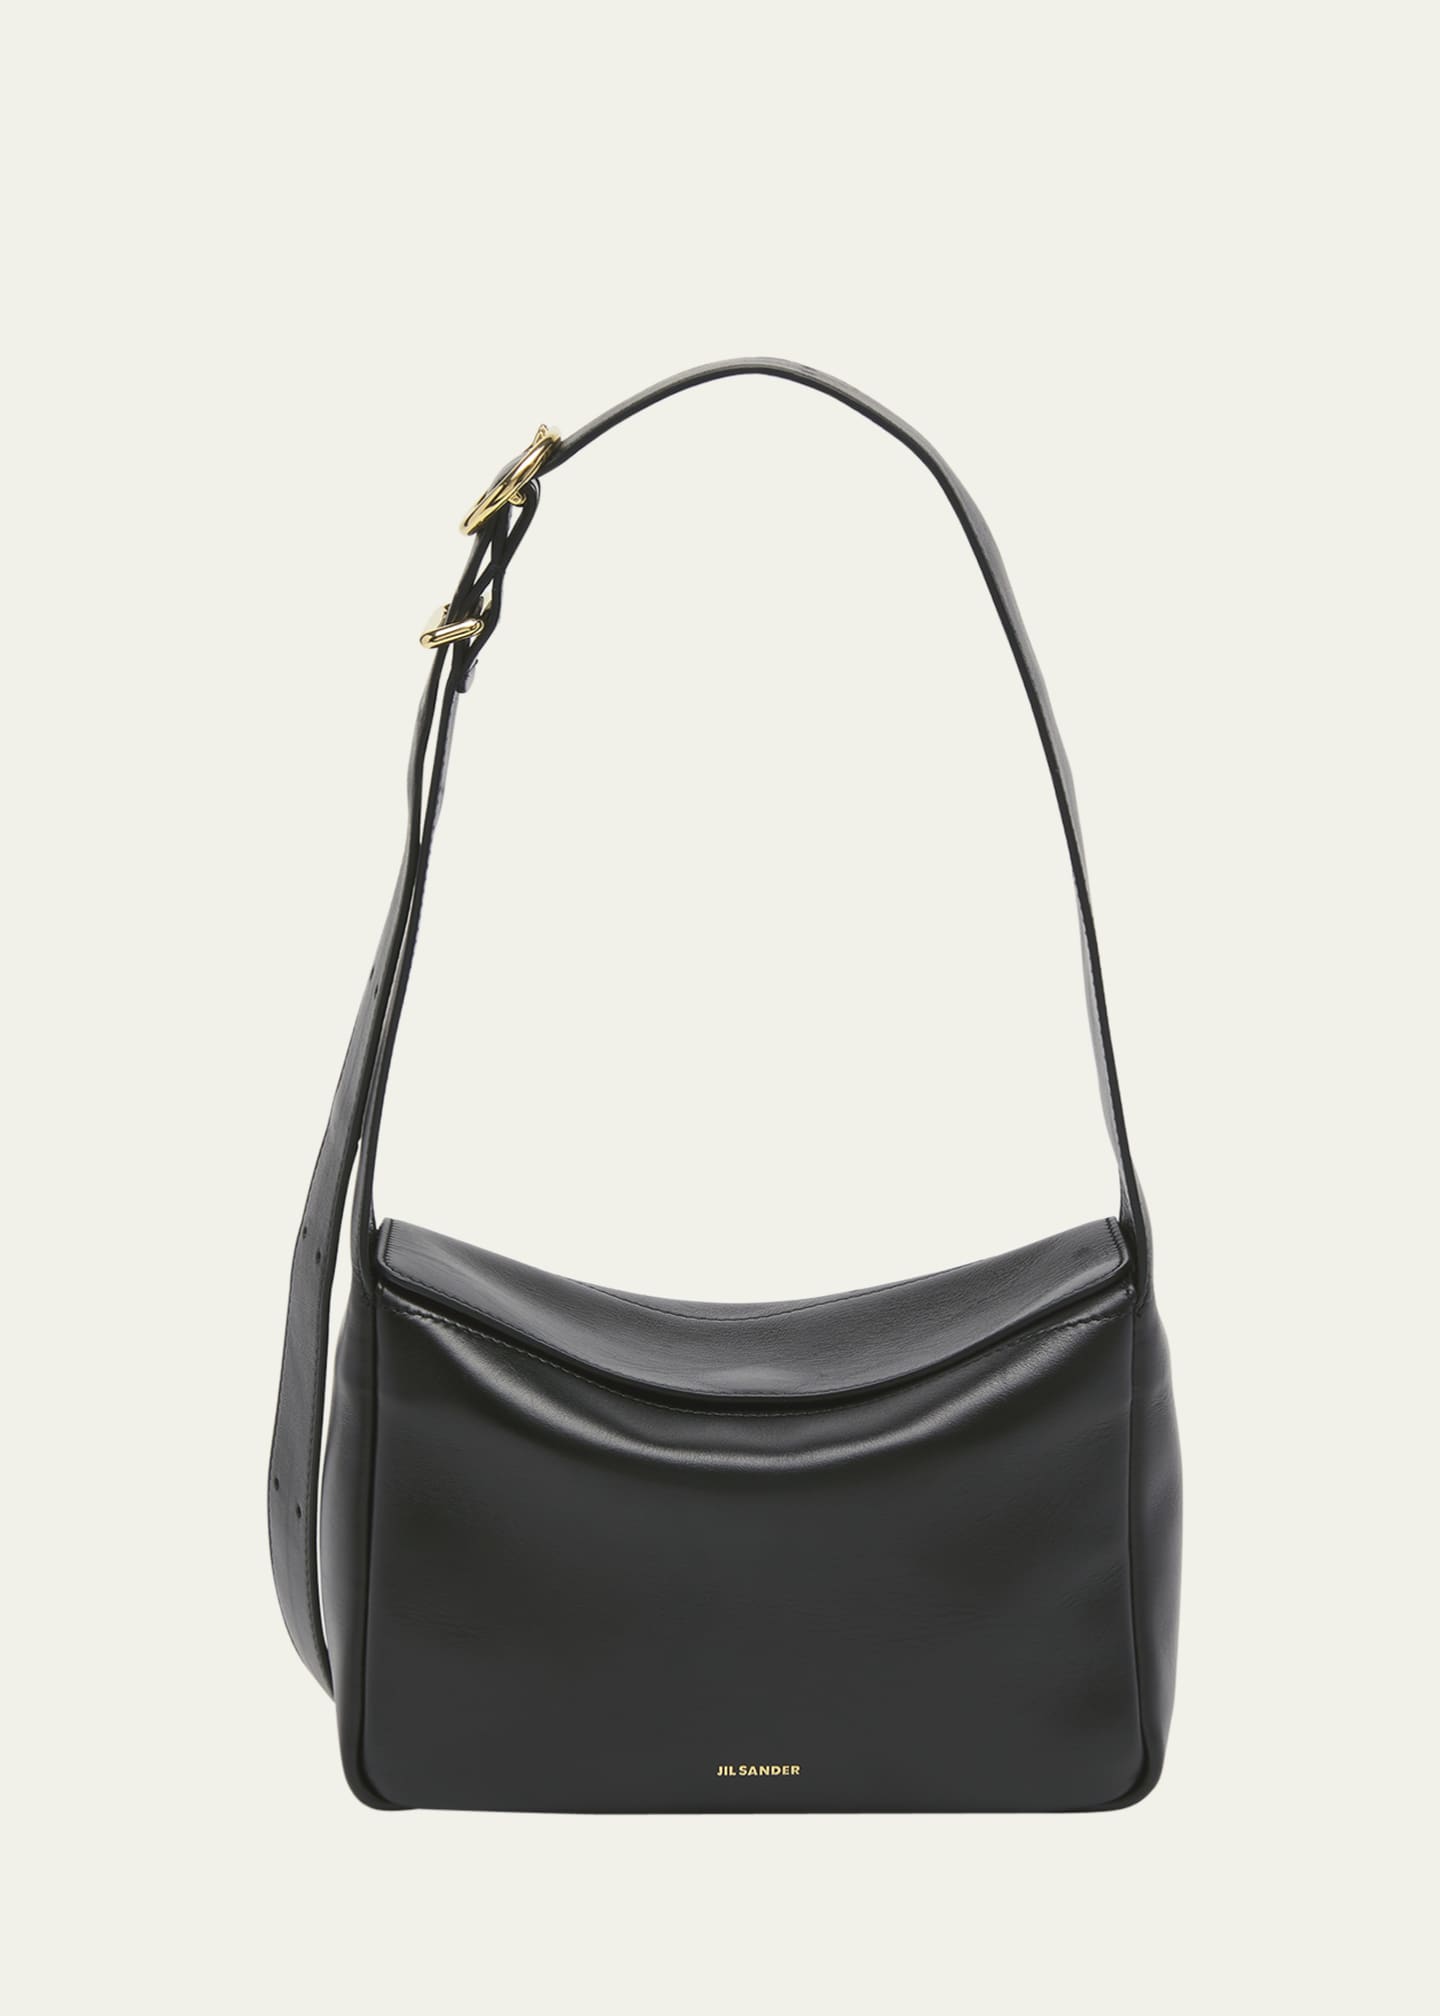 Jil Sander XS Fold-Over Flap Leather Shoulder Bag - Bergdorf Goodman